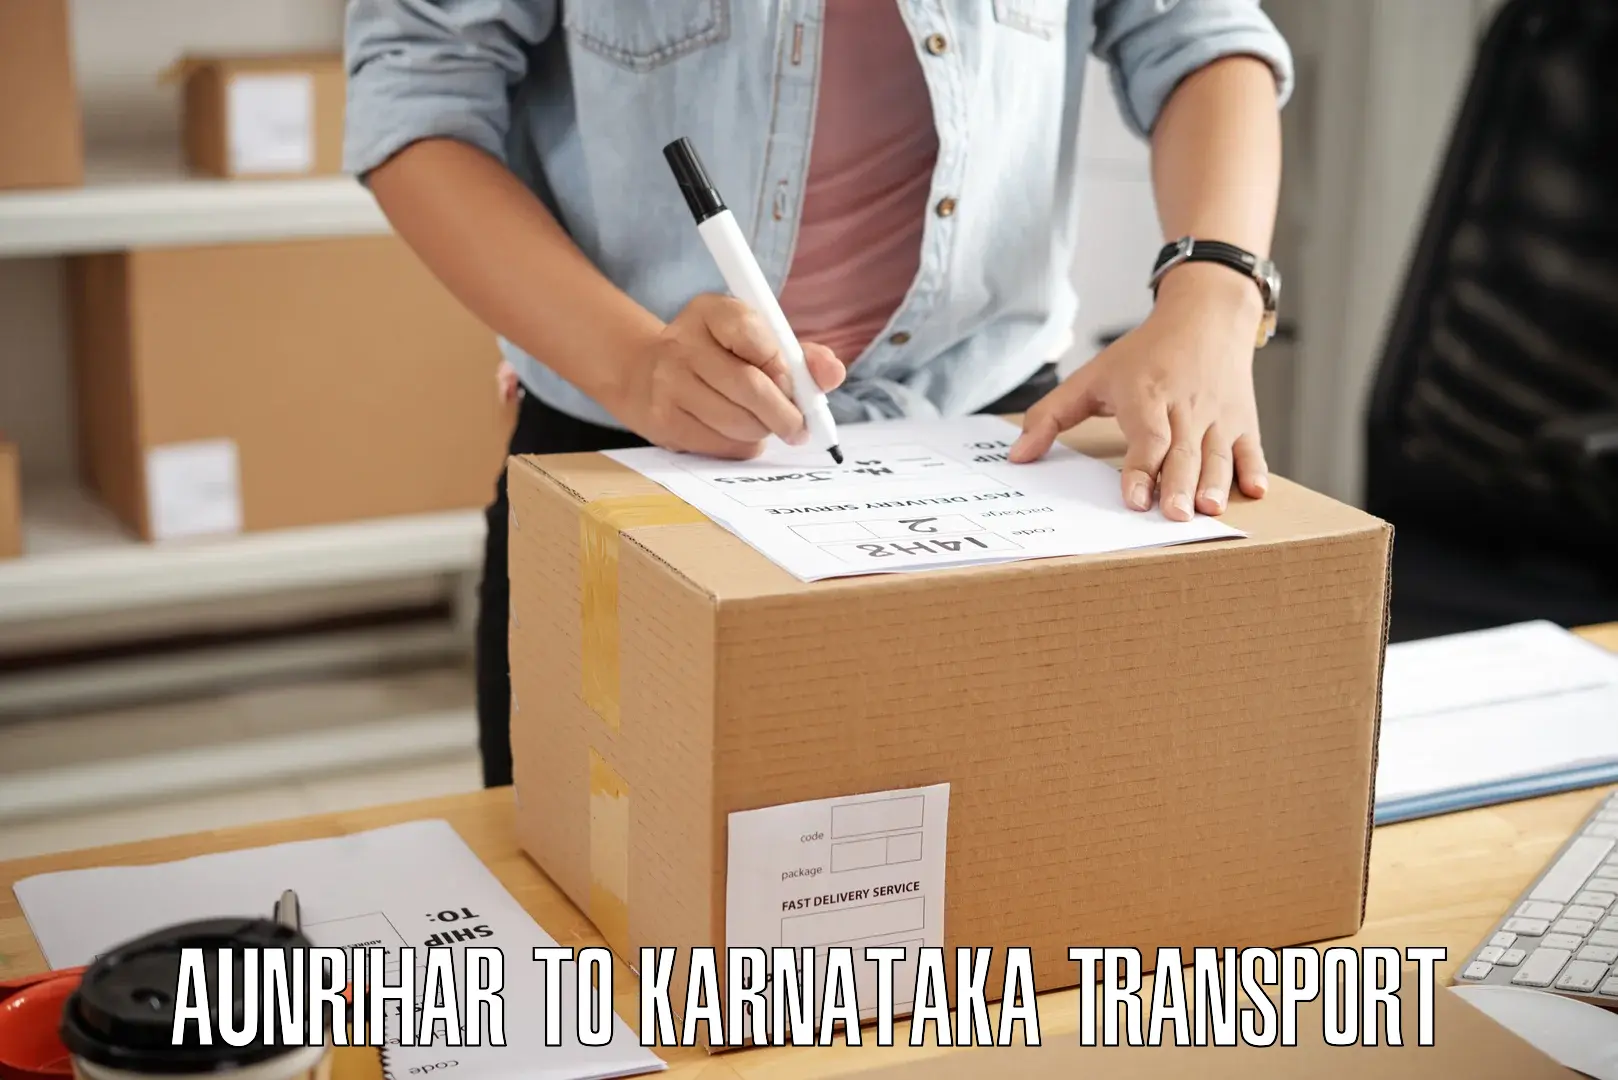 Parcel transport services Aunrihar to Koppa